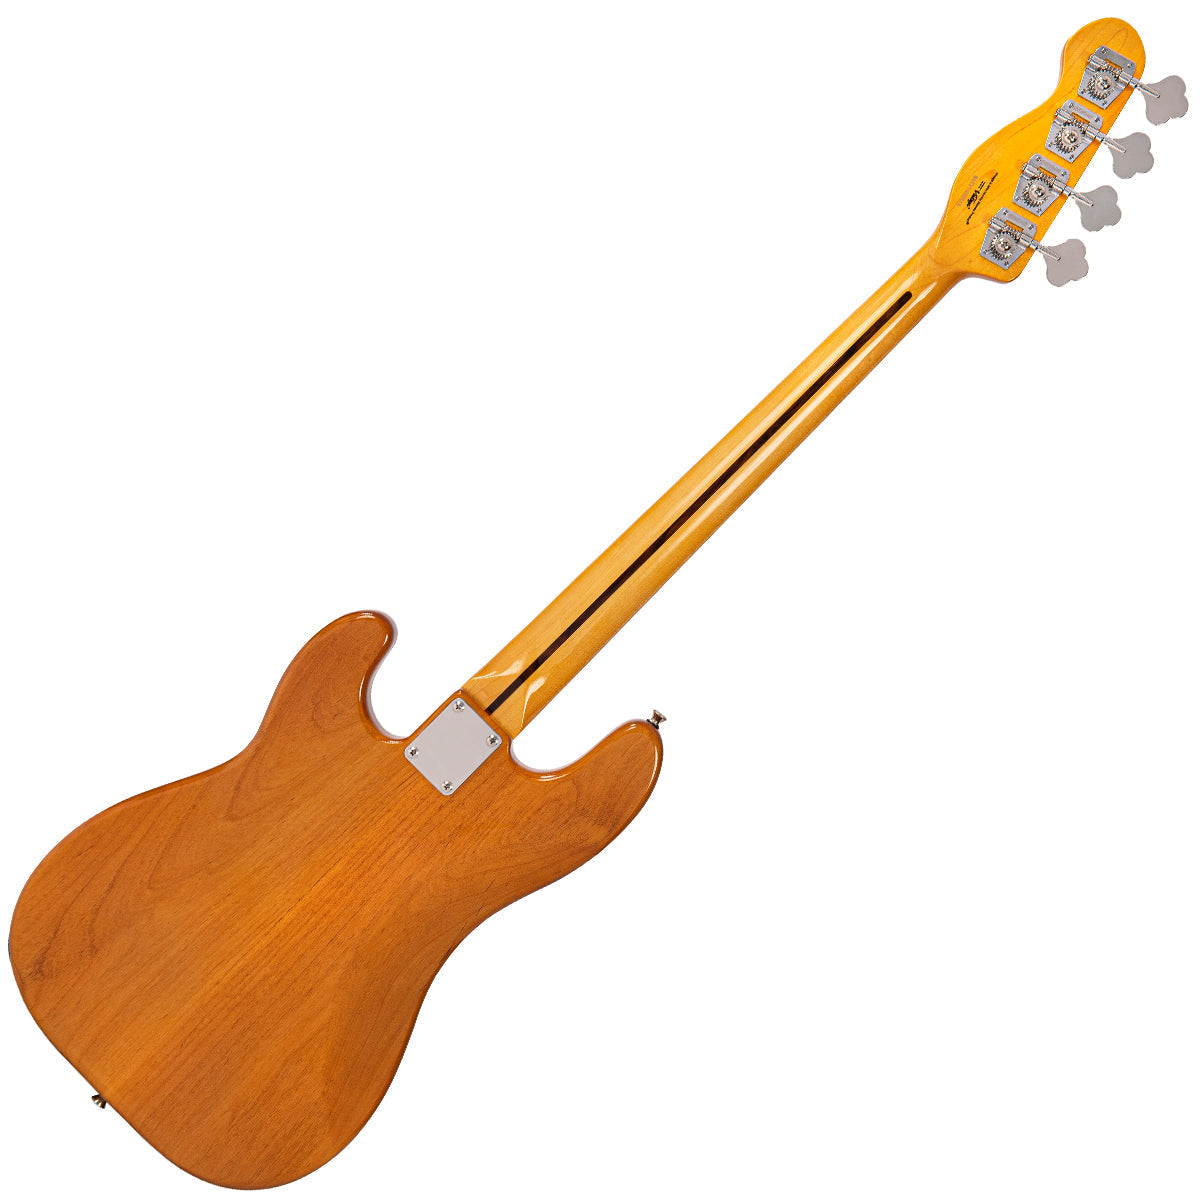 Vintage V51 ReIssued Bass Guitar ~ Vintage Blonde, Bass Guitar for sale at Richards Guitars.